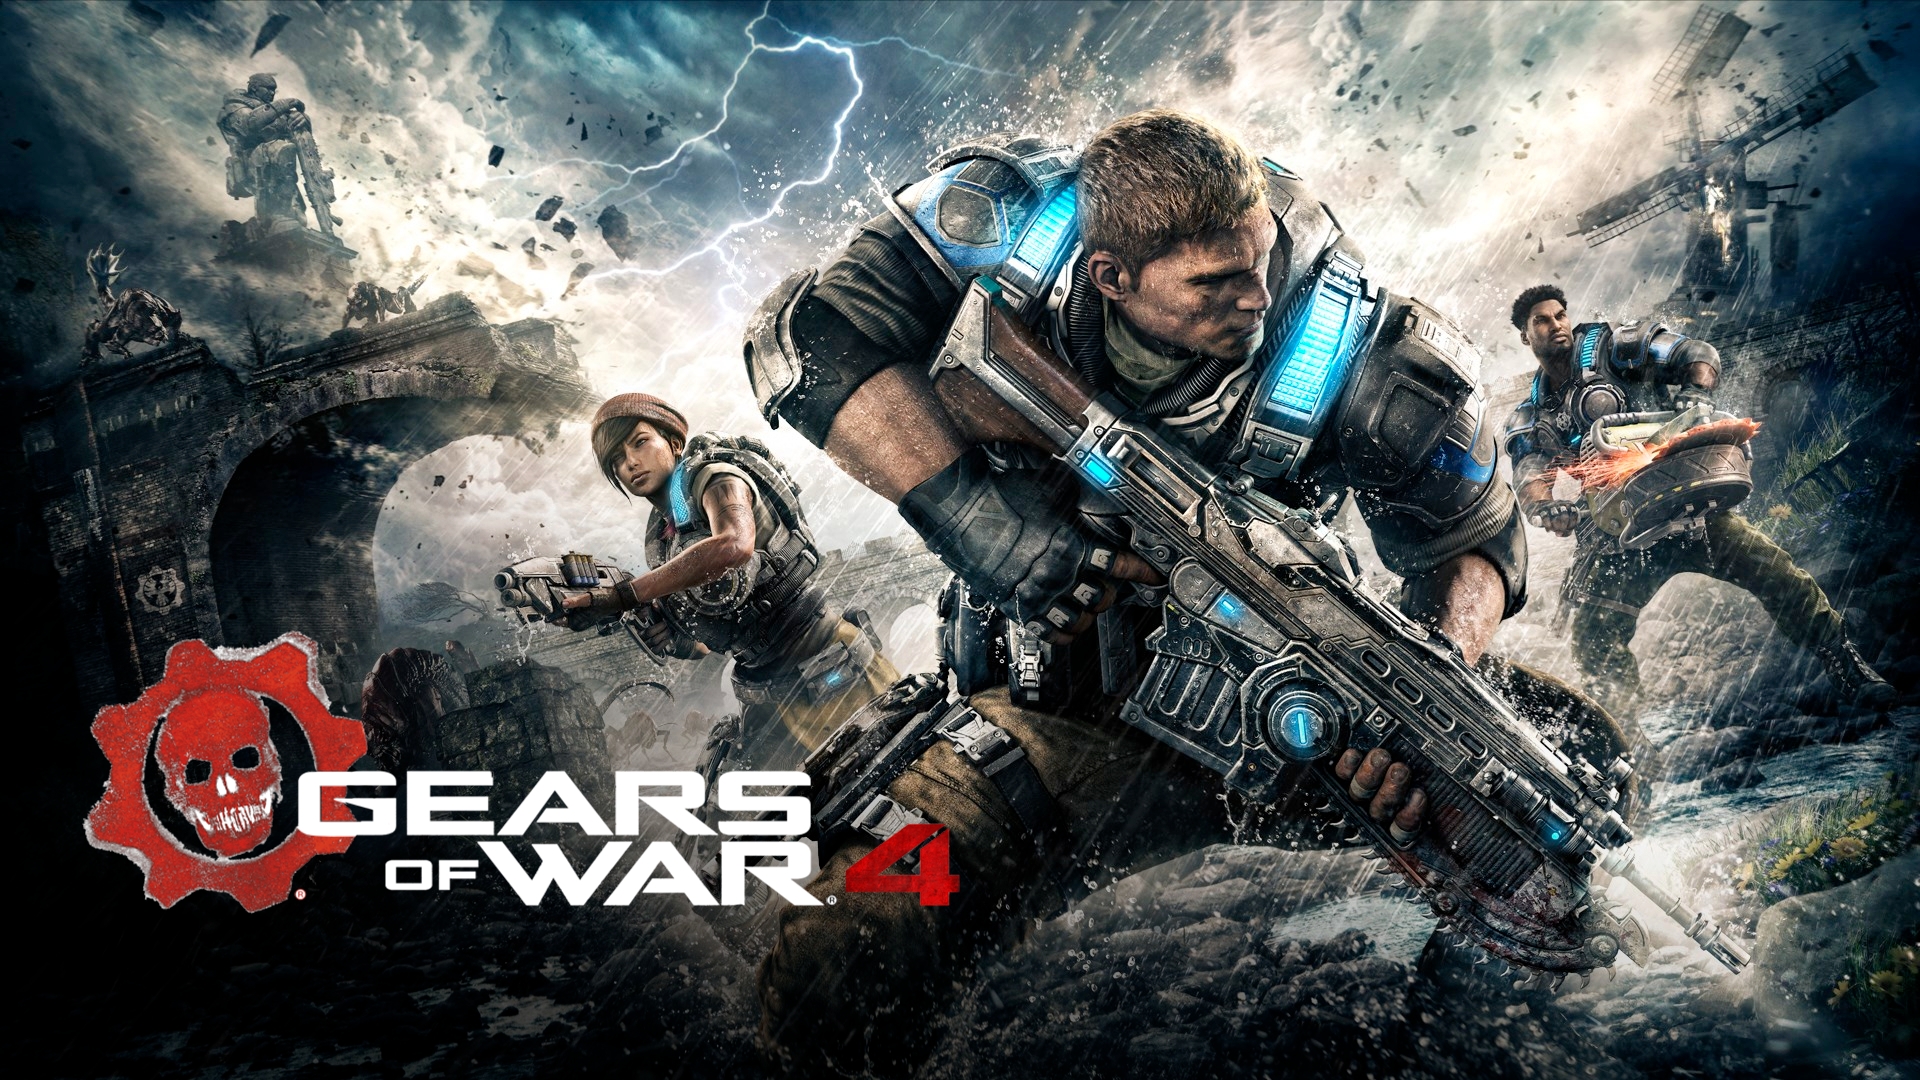 Gears of War: Ultimate - Requisitos recomendados para a Versão PC